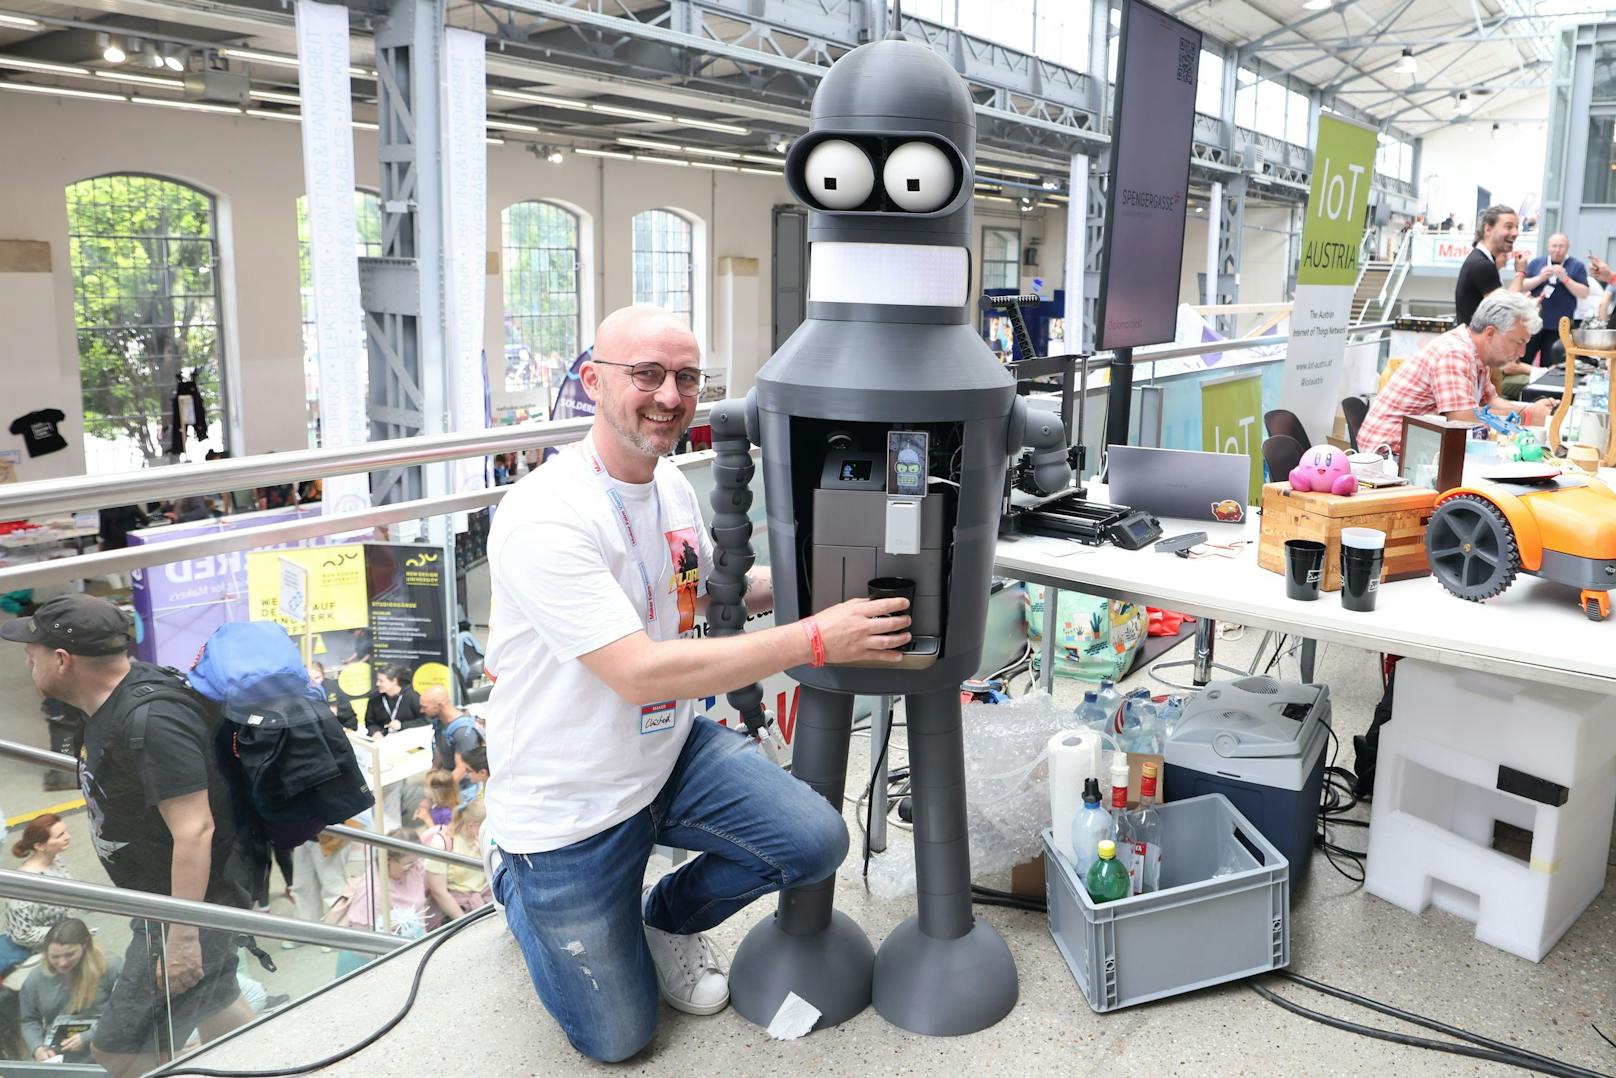 Produktmanager und selbsternannter Hobby-Bastler Christoph Prantl entwickelte den "Futurama-Roboter".